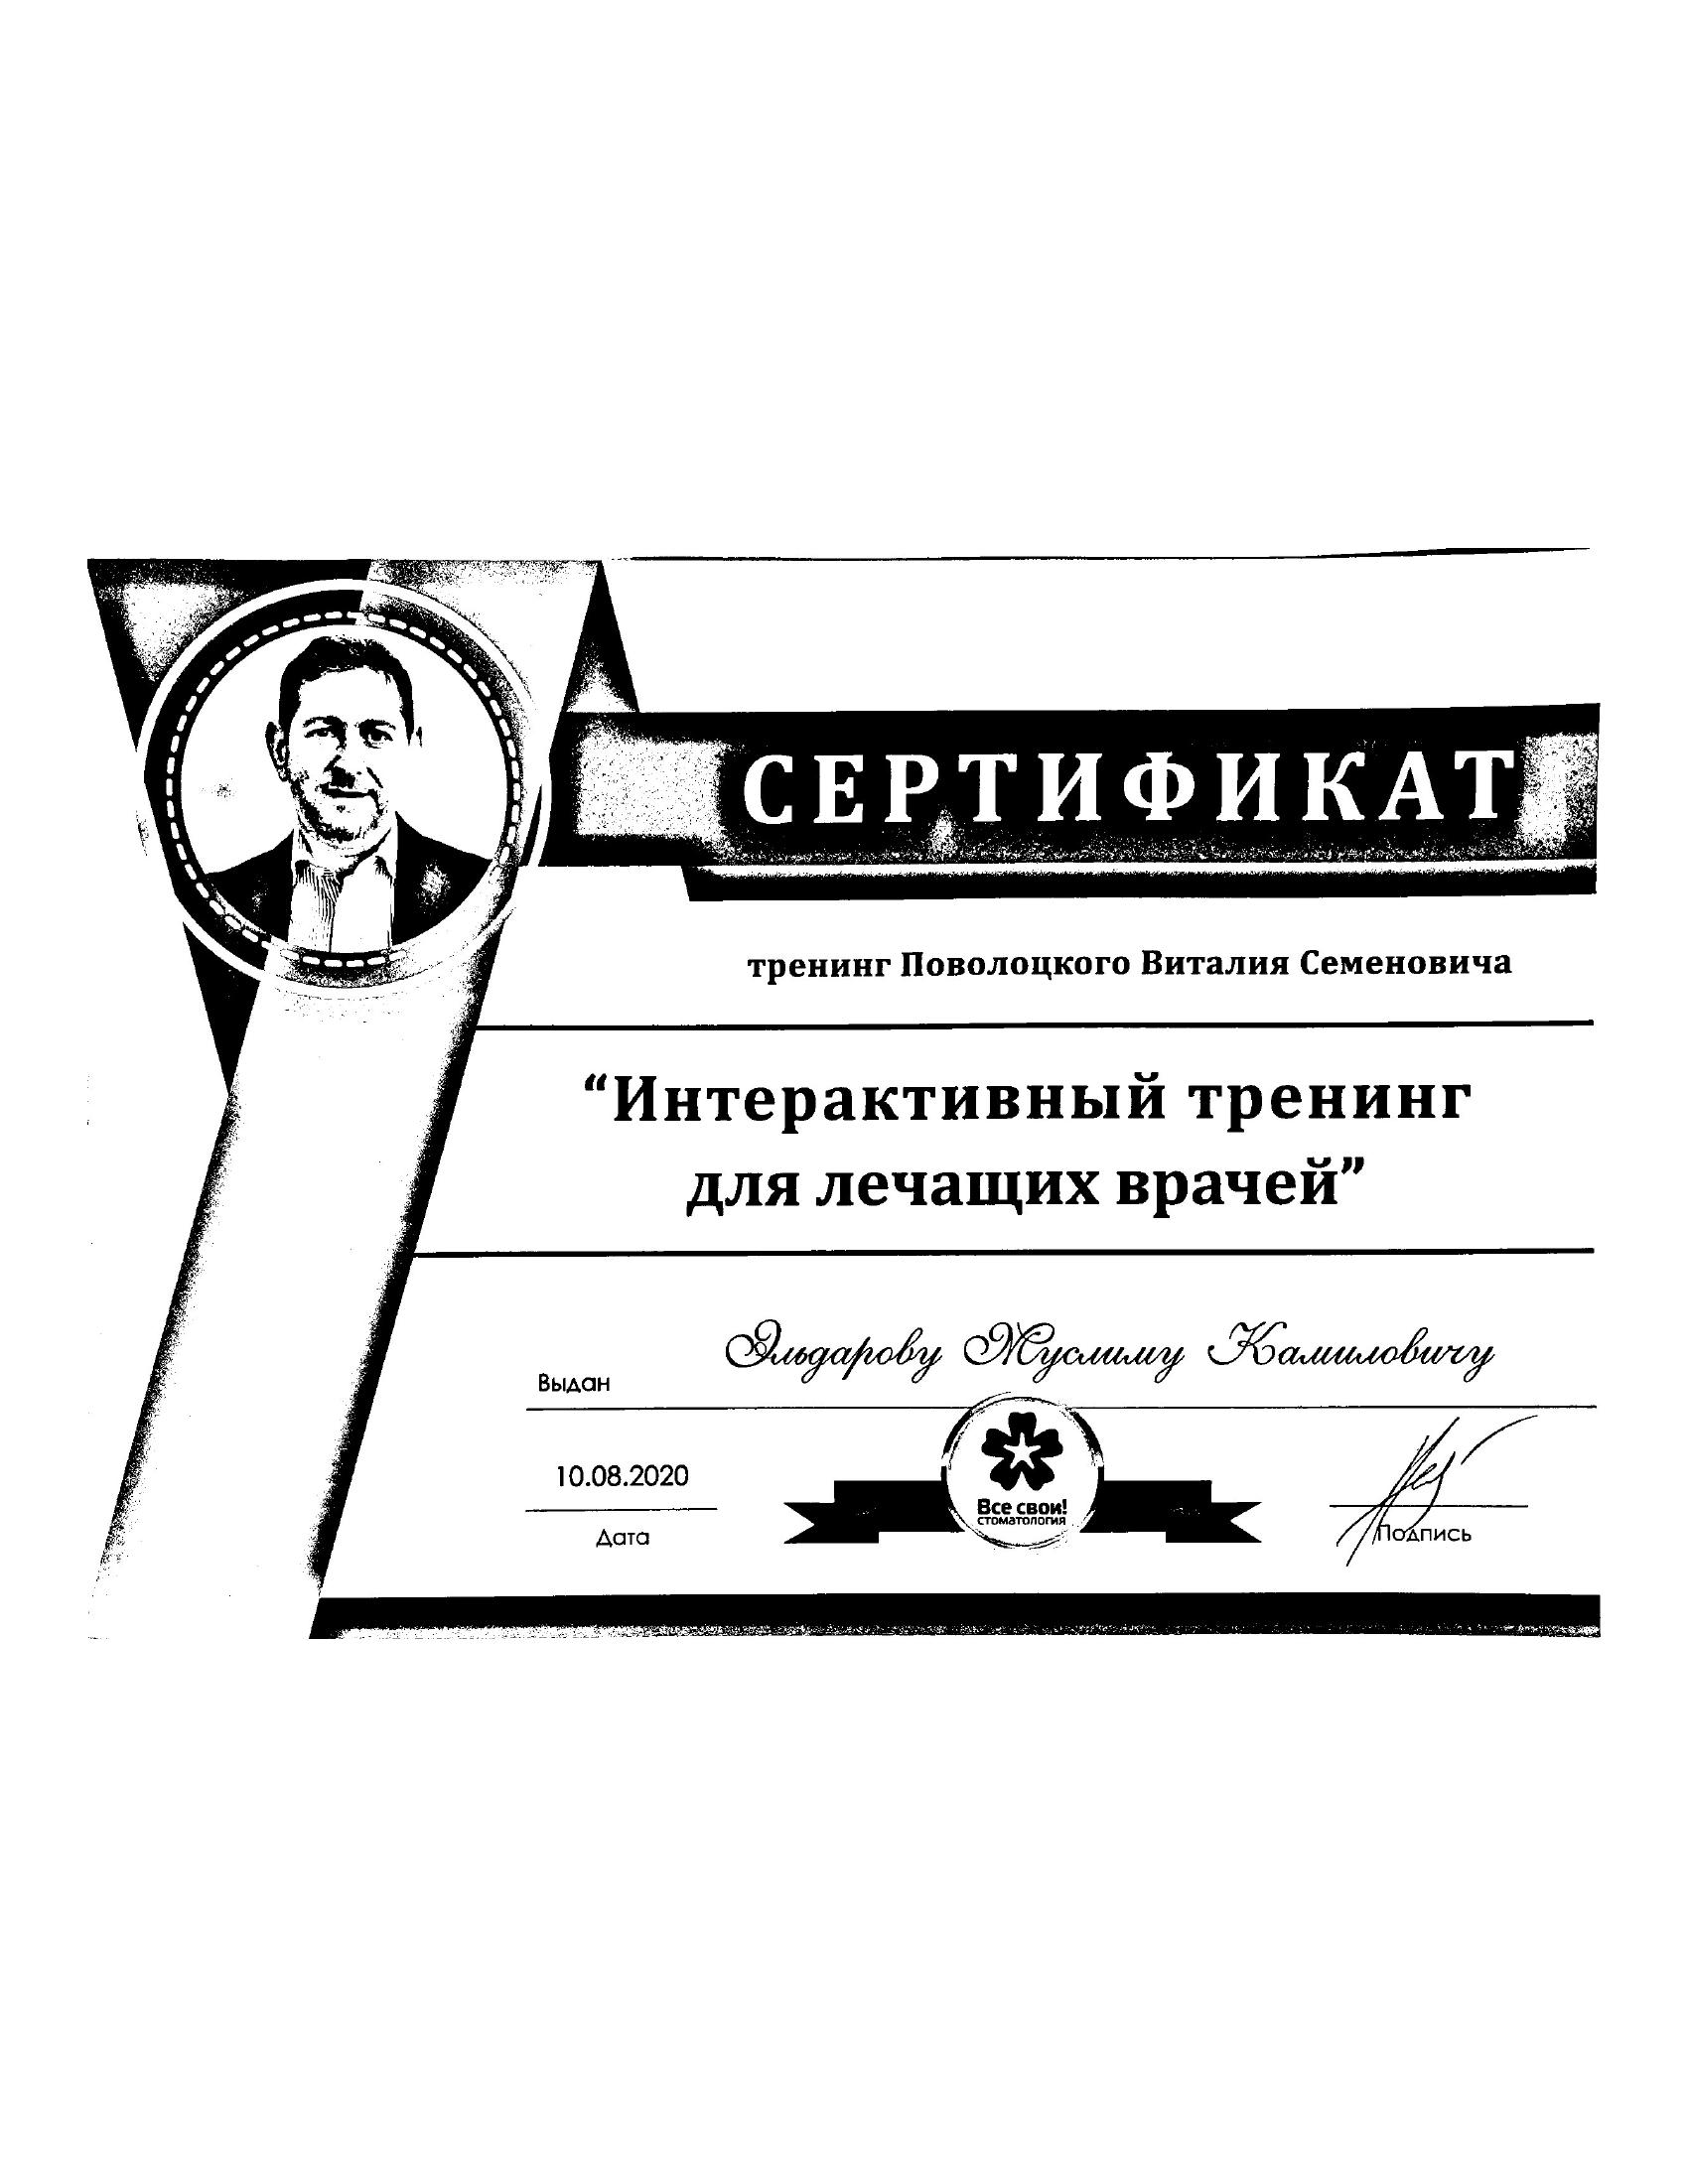 Сертификат 2 получил Муслим Камилович